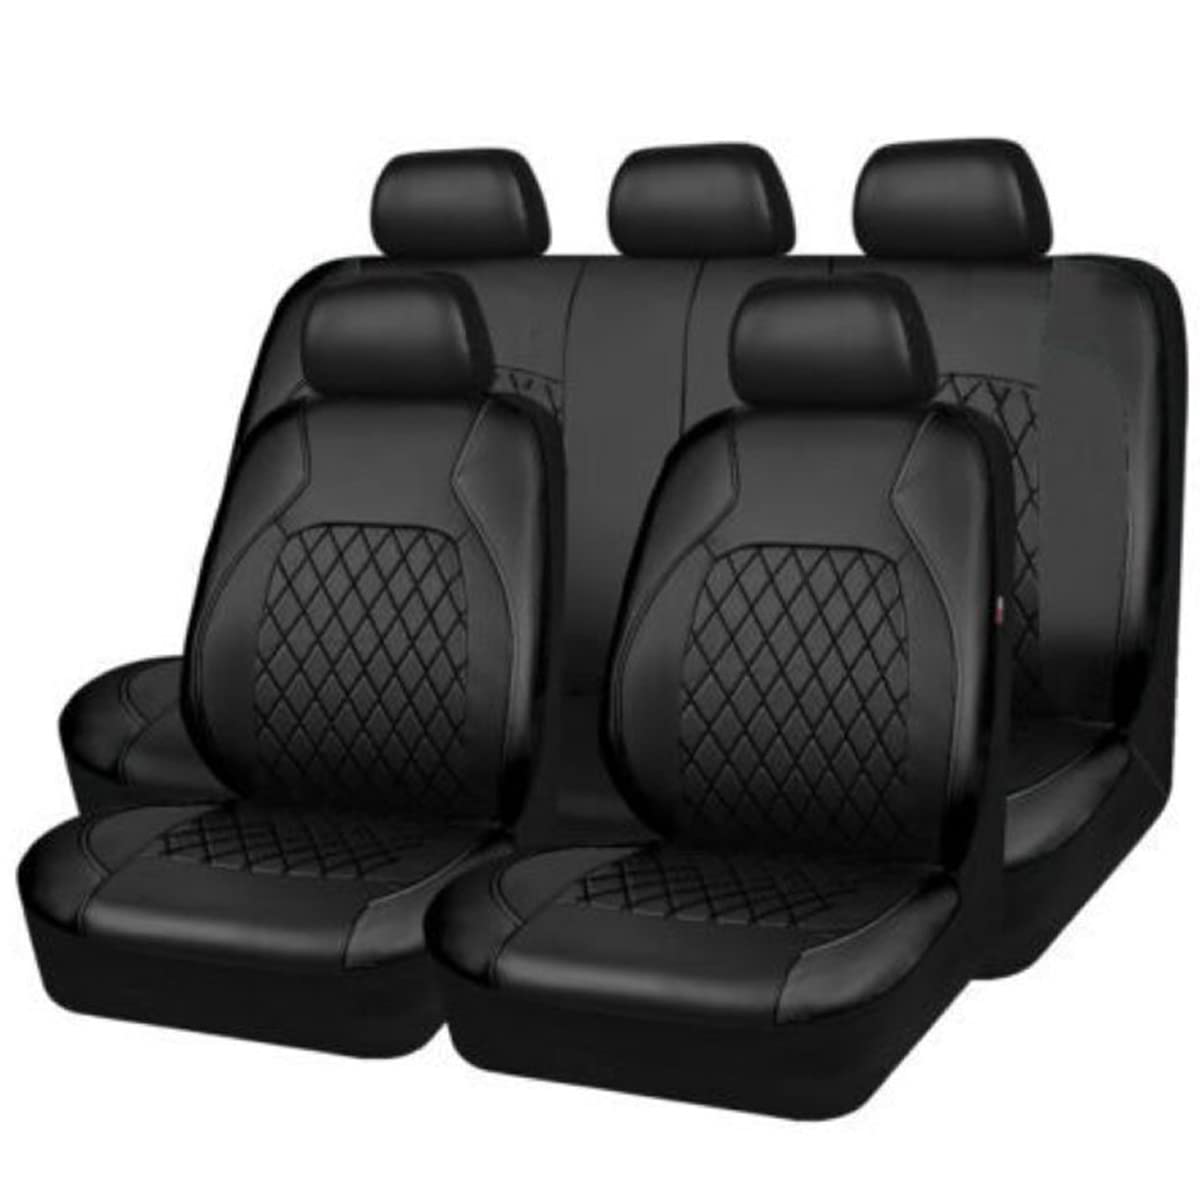 TEDE 9 PCS Auto-Sitzbezüge Set für Ford Mondeo’13 MK5 2013 2014 2015 2016,Leder Komplettset Sitzbezug für Auto Vordersitze Rücksitz,A/9pcs Set Black von TEDE